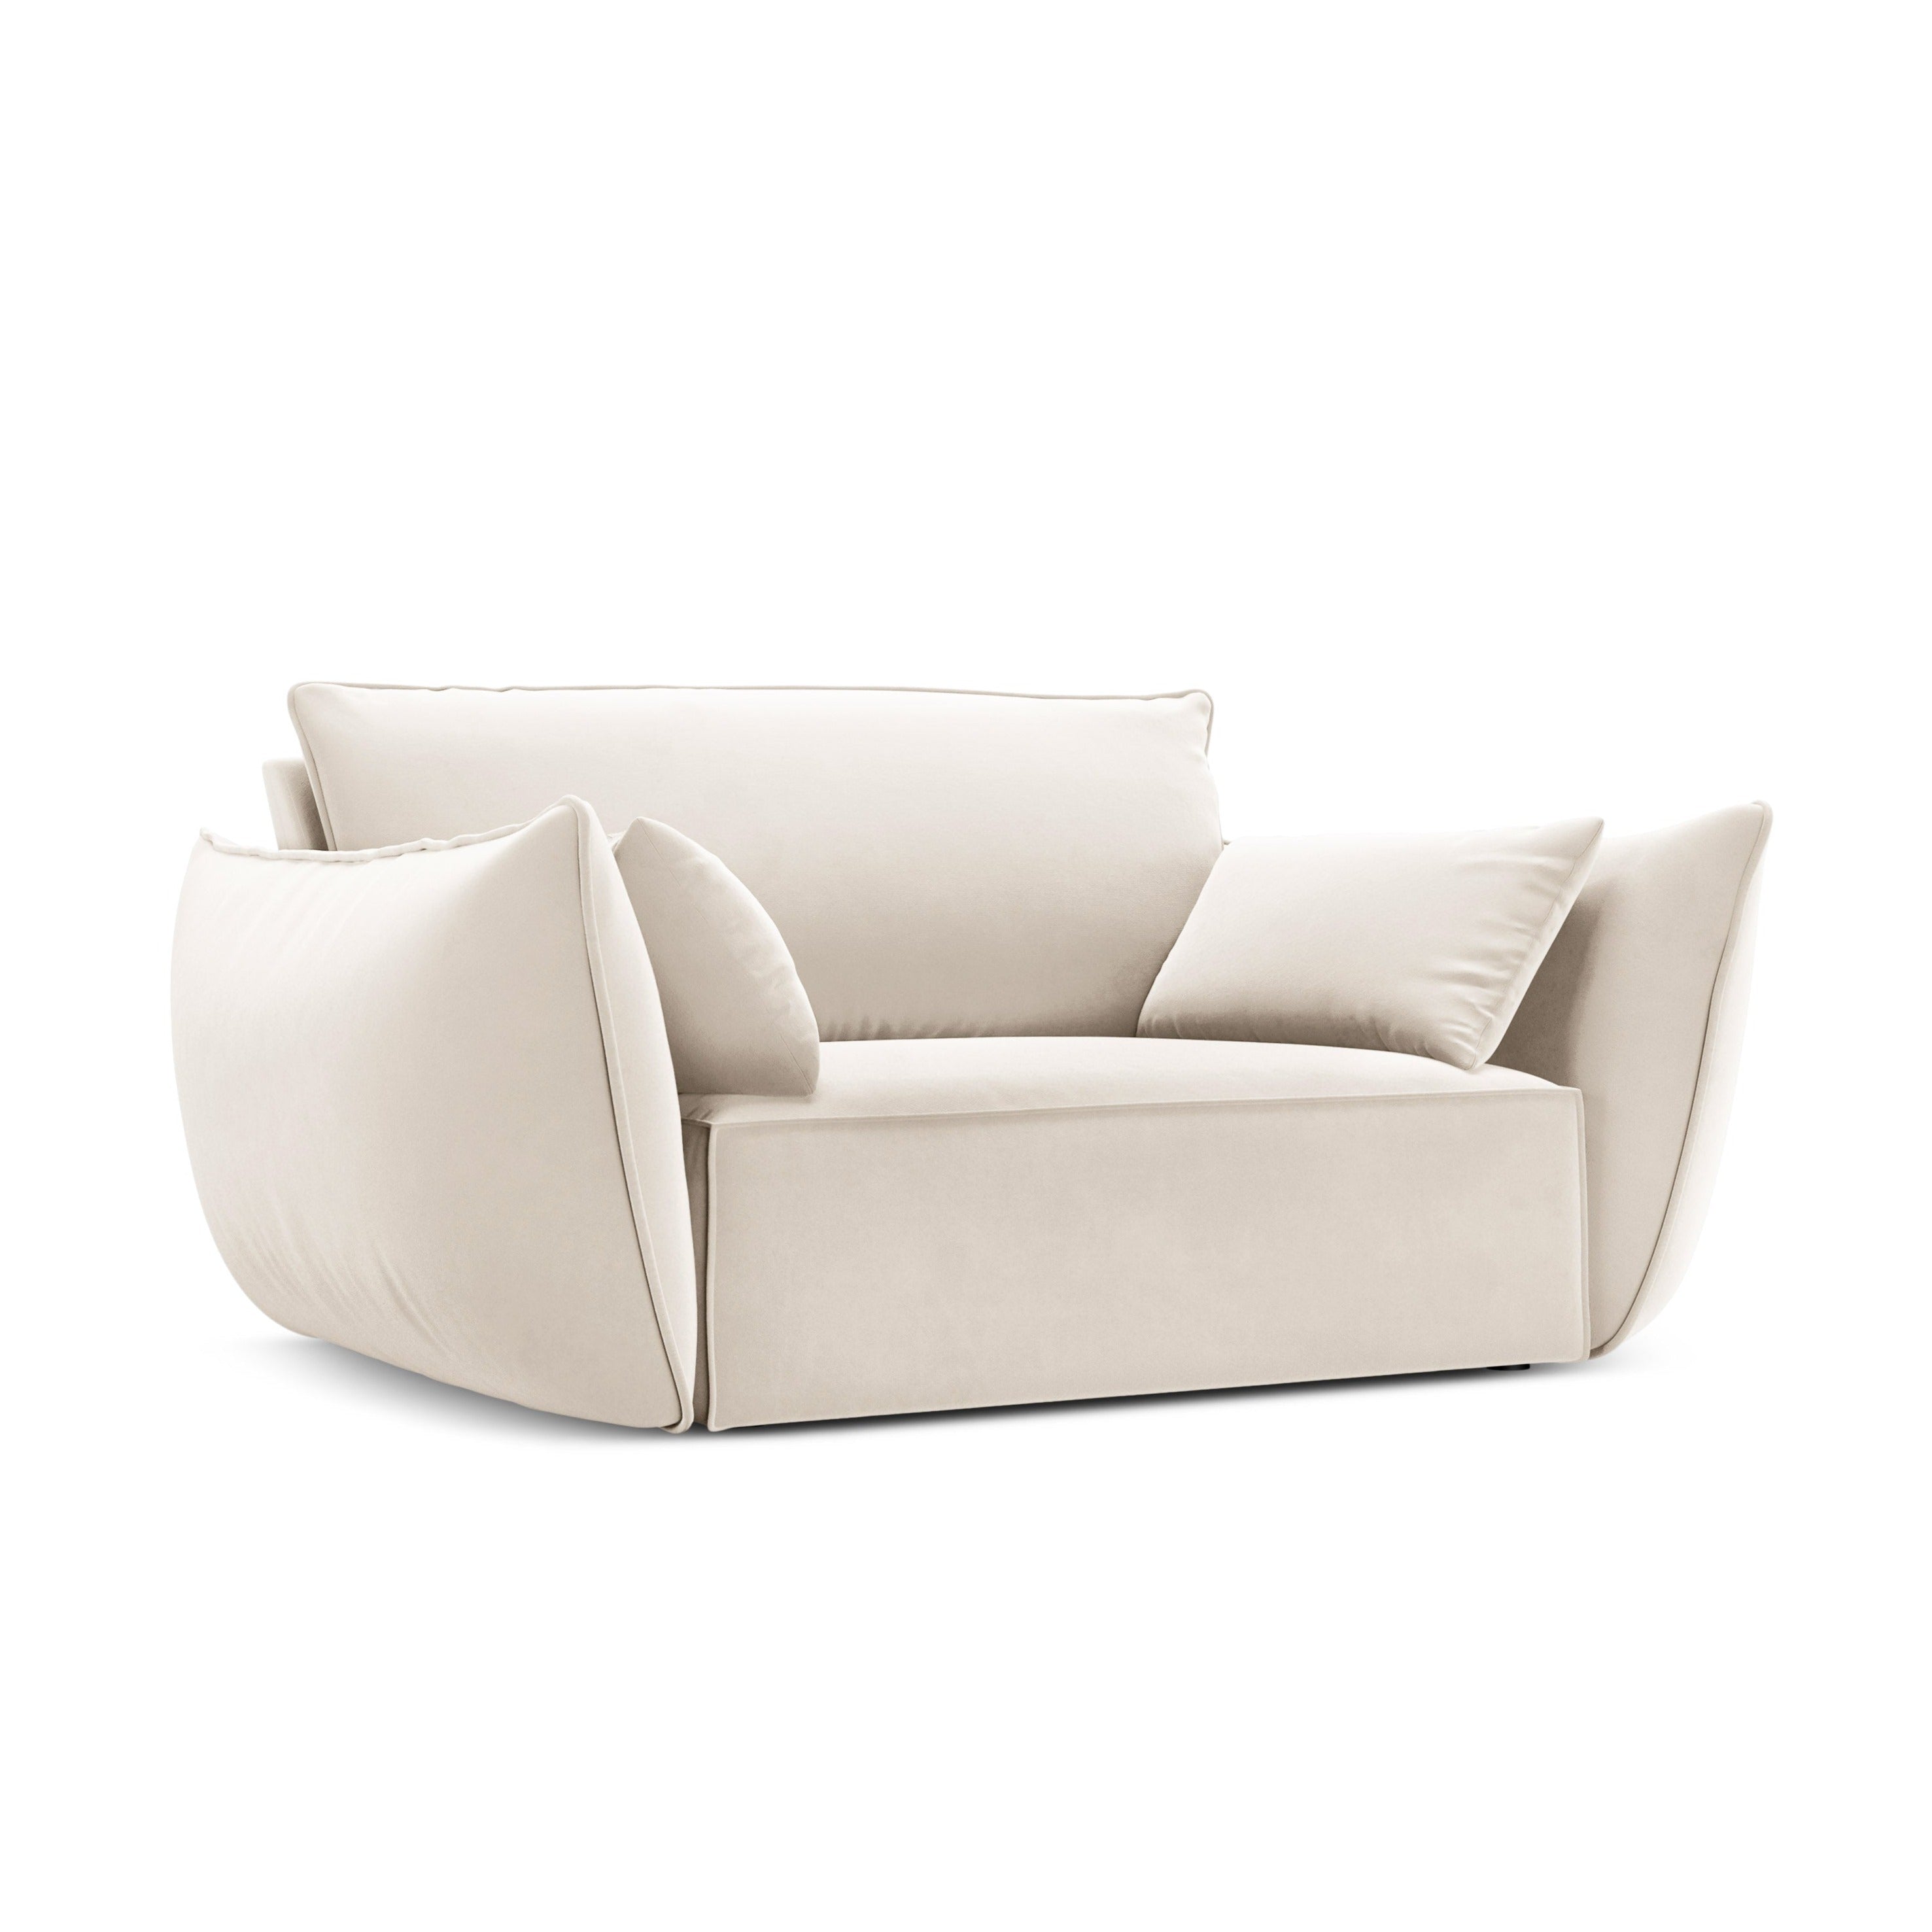 Velvet Armchair, "Vanda", 1 Seat, 128x100x85
Made in Europe, Mazzini Sofas, Eye on Design